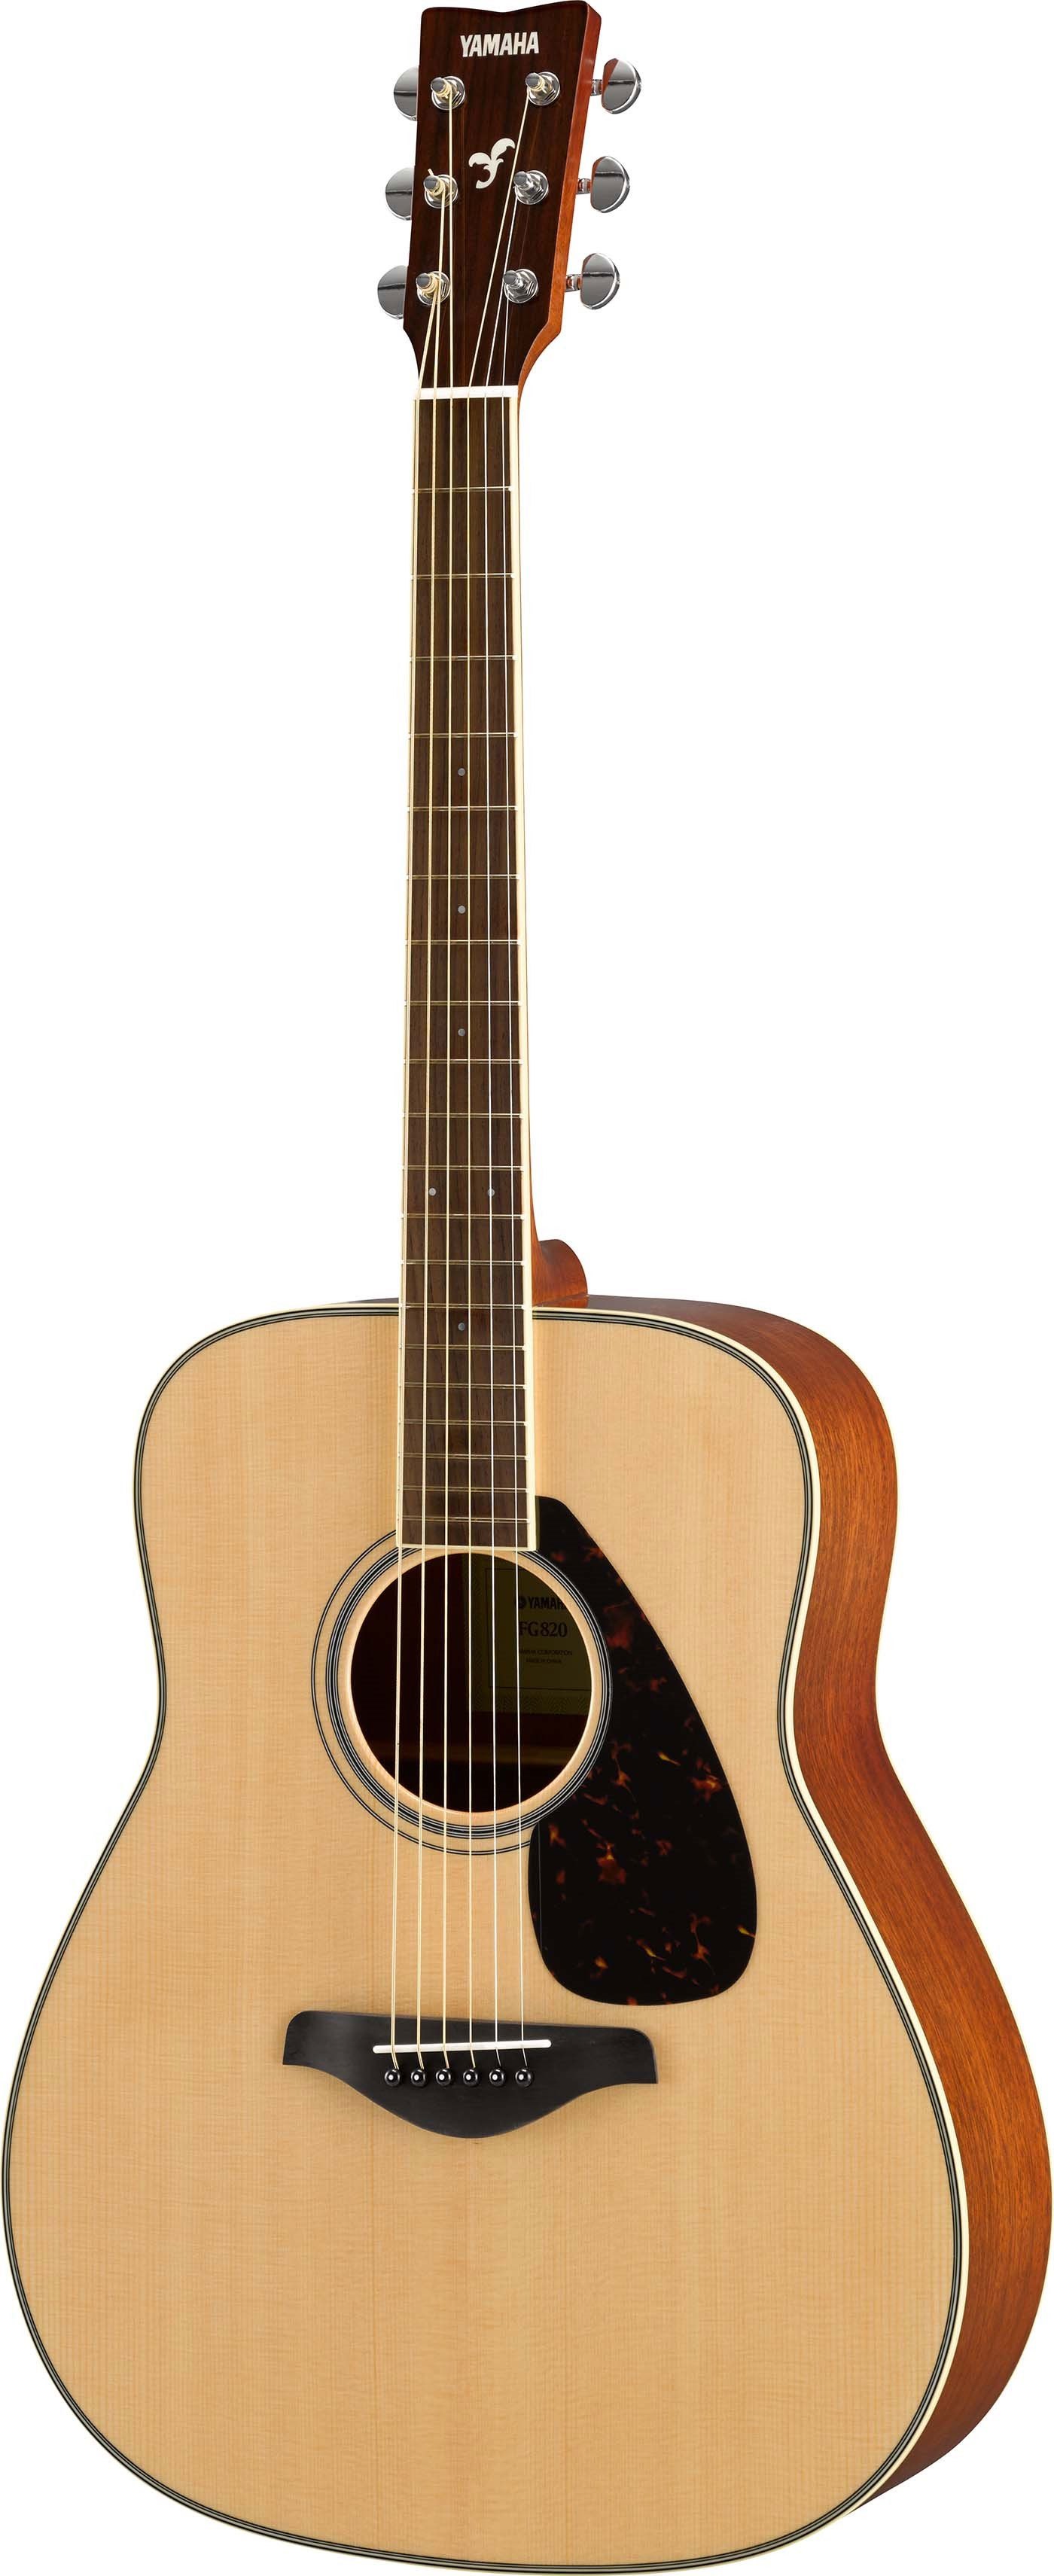 YAMAHA ビンテージ アコースティックギター FG700S 黒ラベル ハード